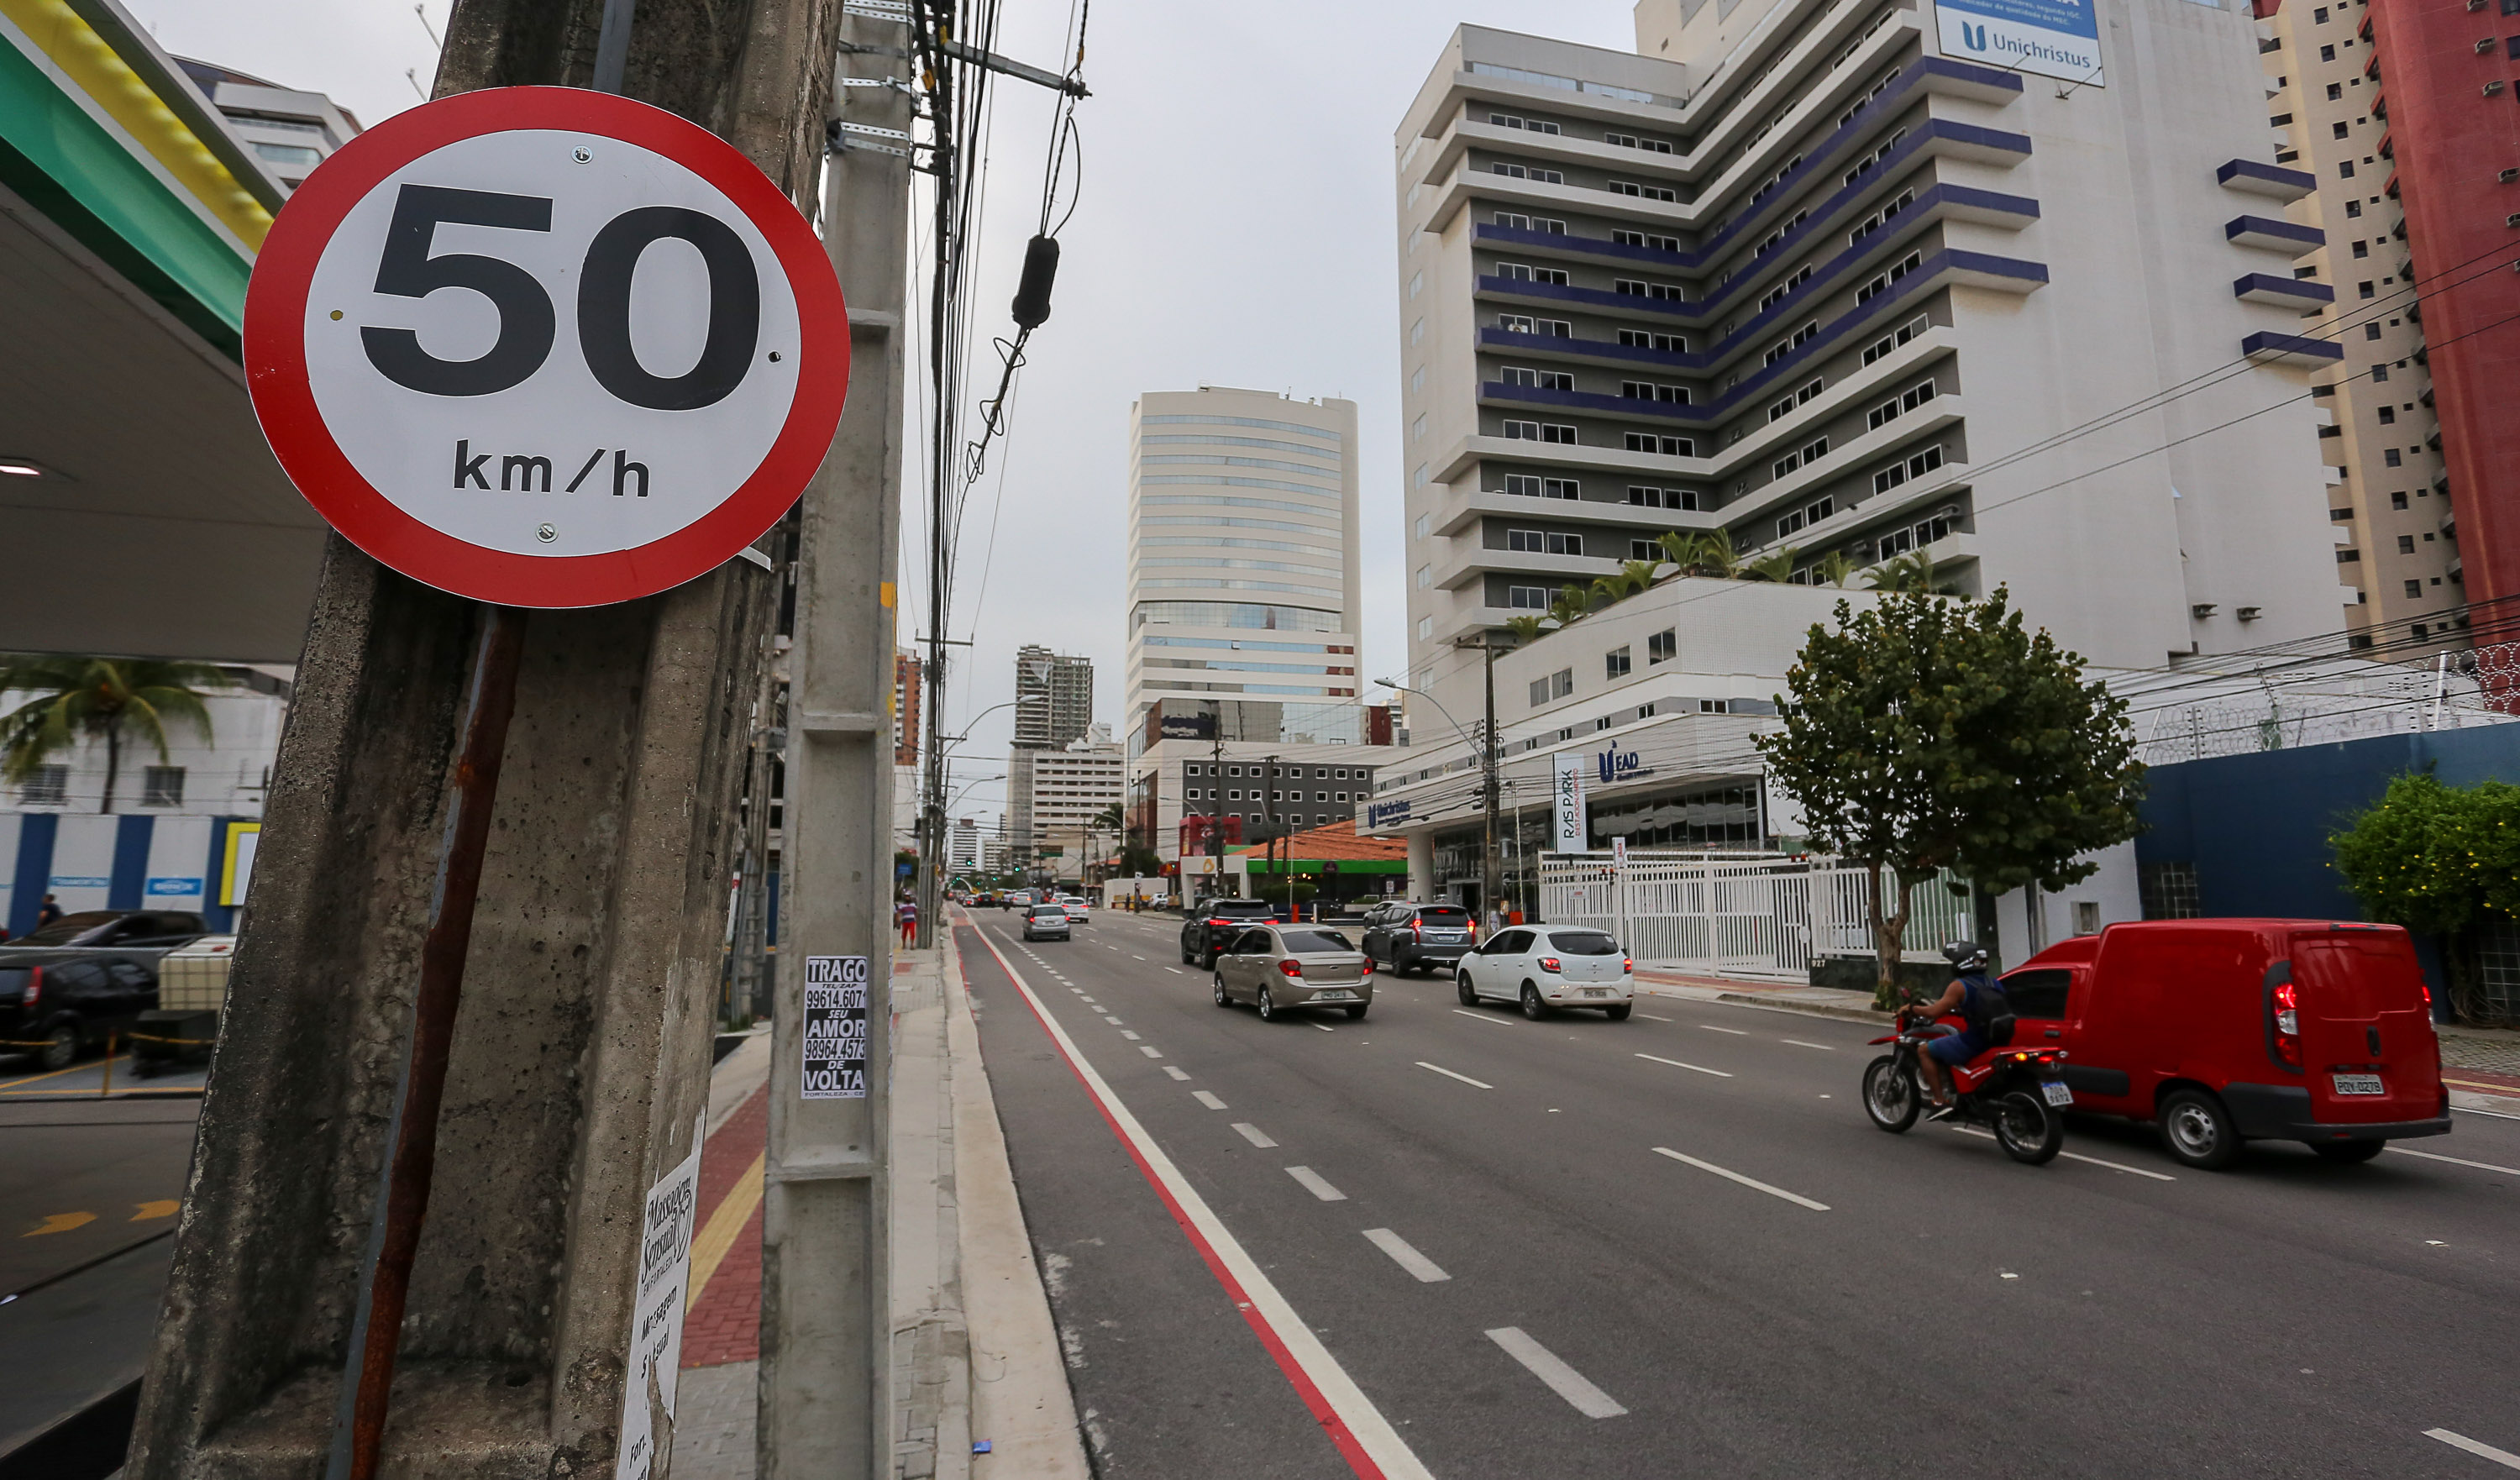 placa de 50 km/h em primeiro plano do lado esquerdo pregada em poste e carros passando em avenida do lado direito